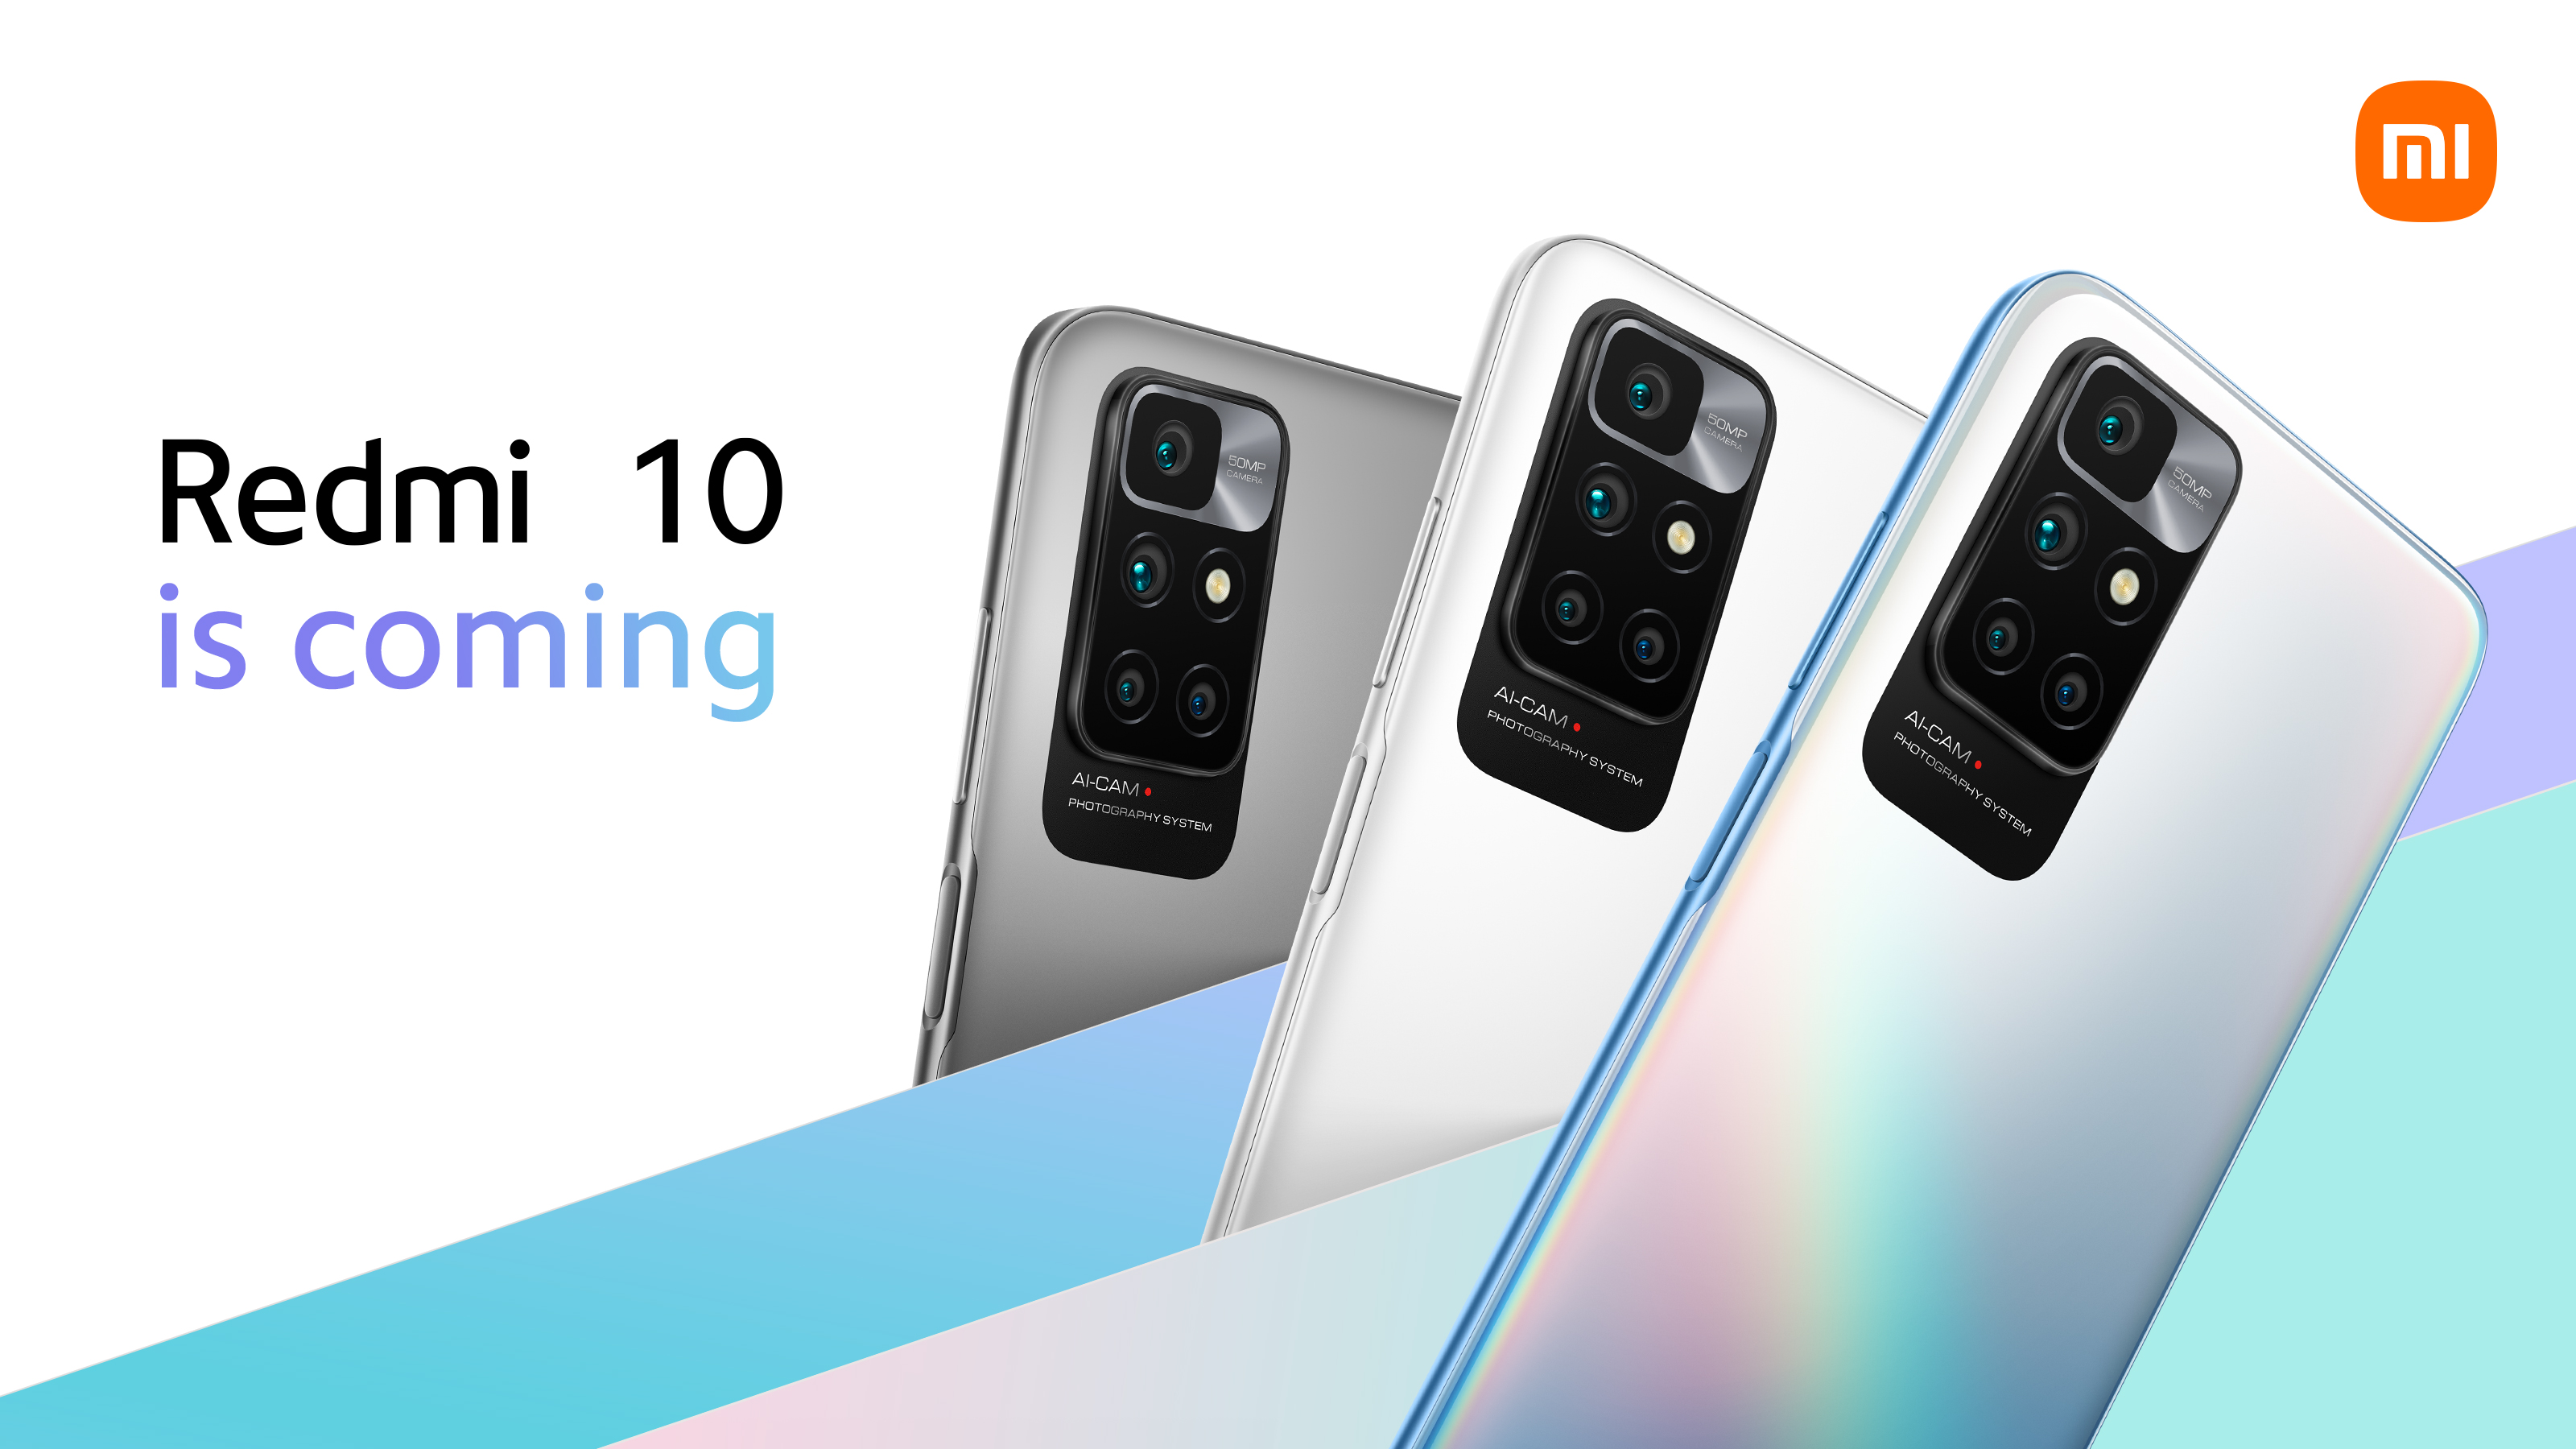 To już oficjalne: Redmi 10 będzie pierwszym smartfonem na rynku z układem MediaTek Helio G88 na pokładzie